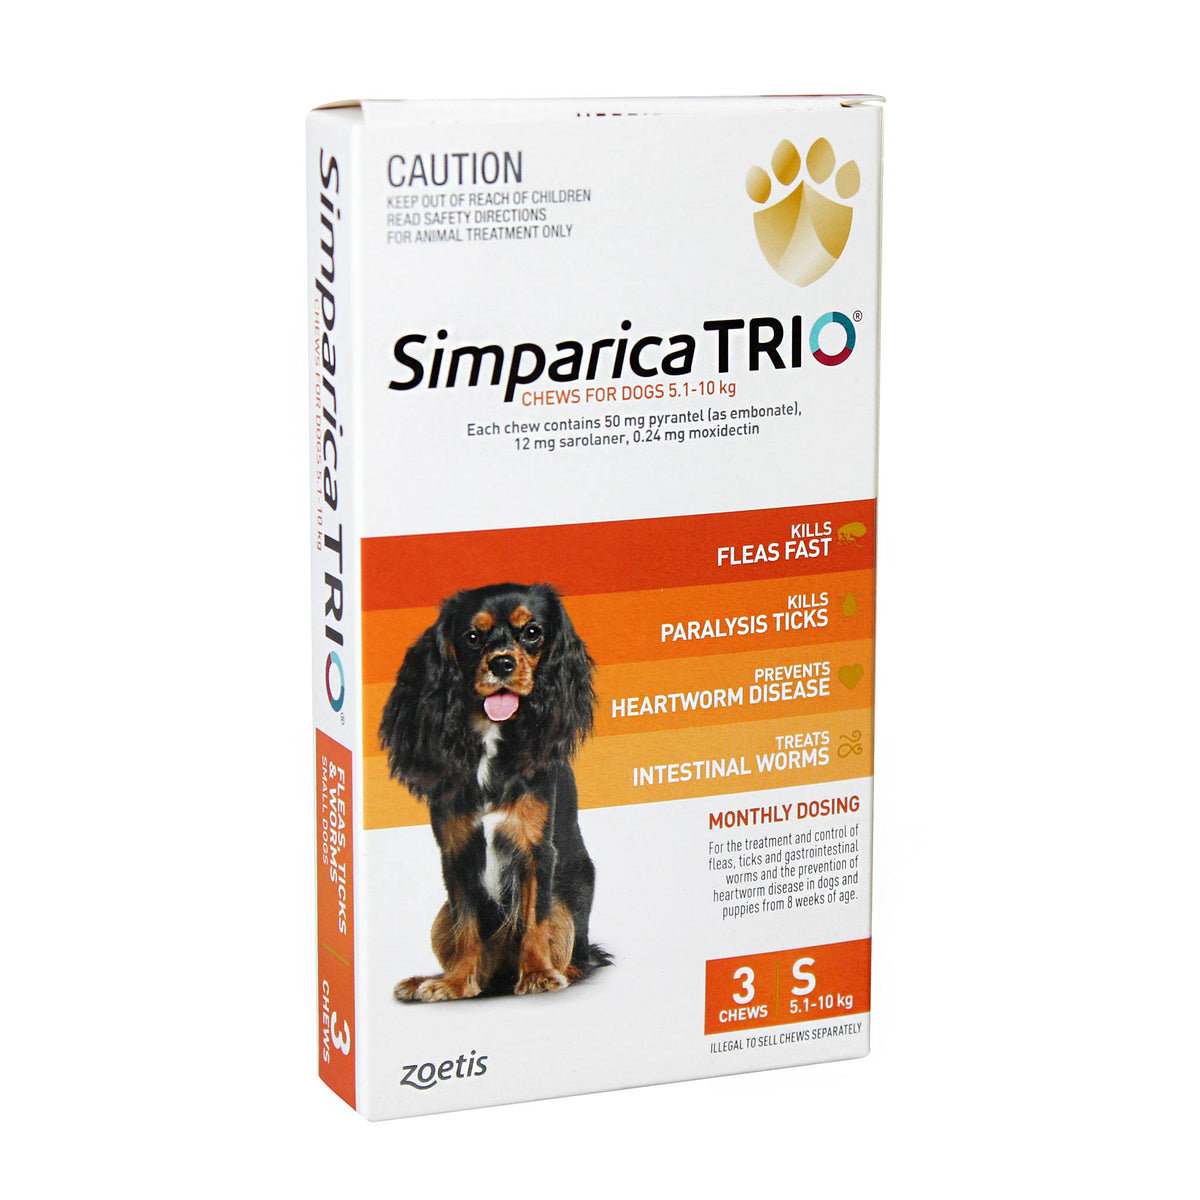 Simparica TRIO for Small Dogs 5.1-10kg